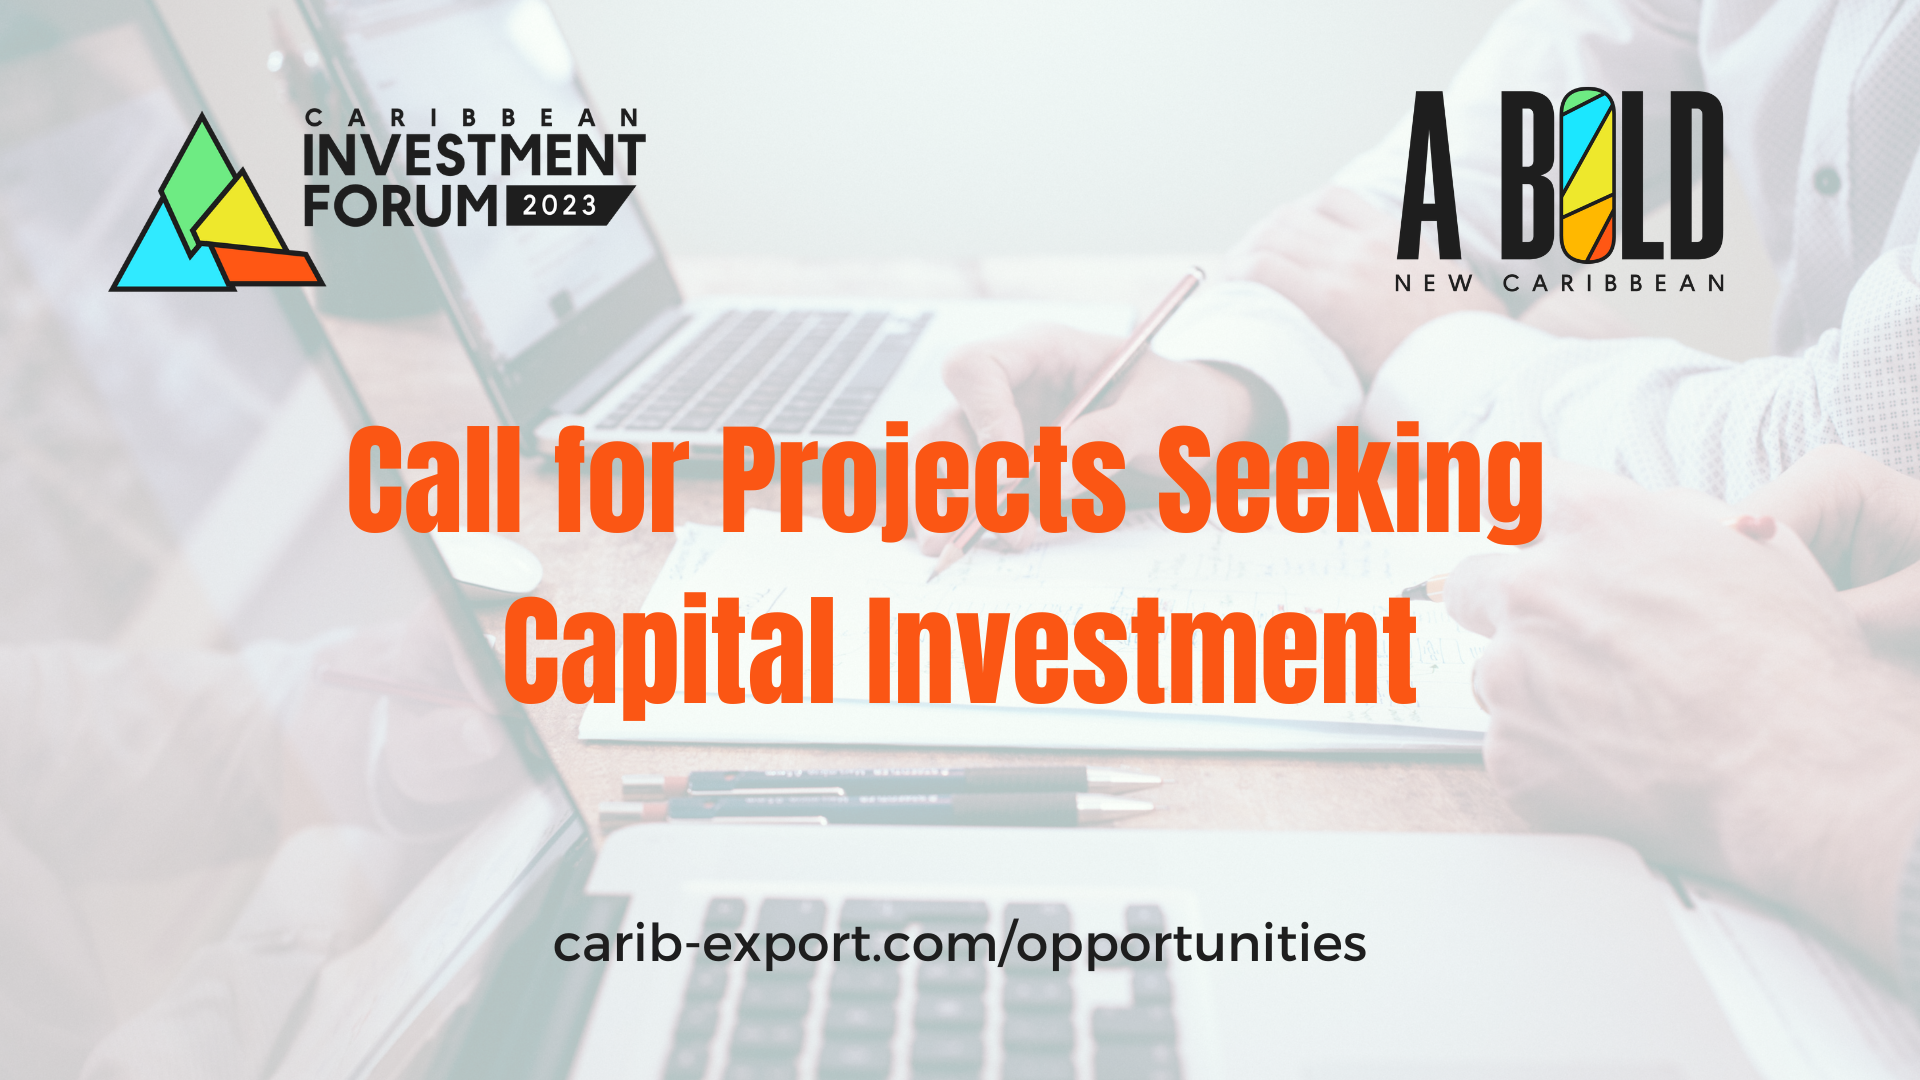 Convocatoria de proyectos que buscan inversión de capital